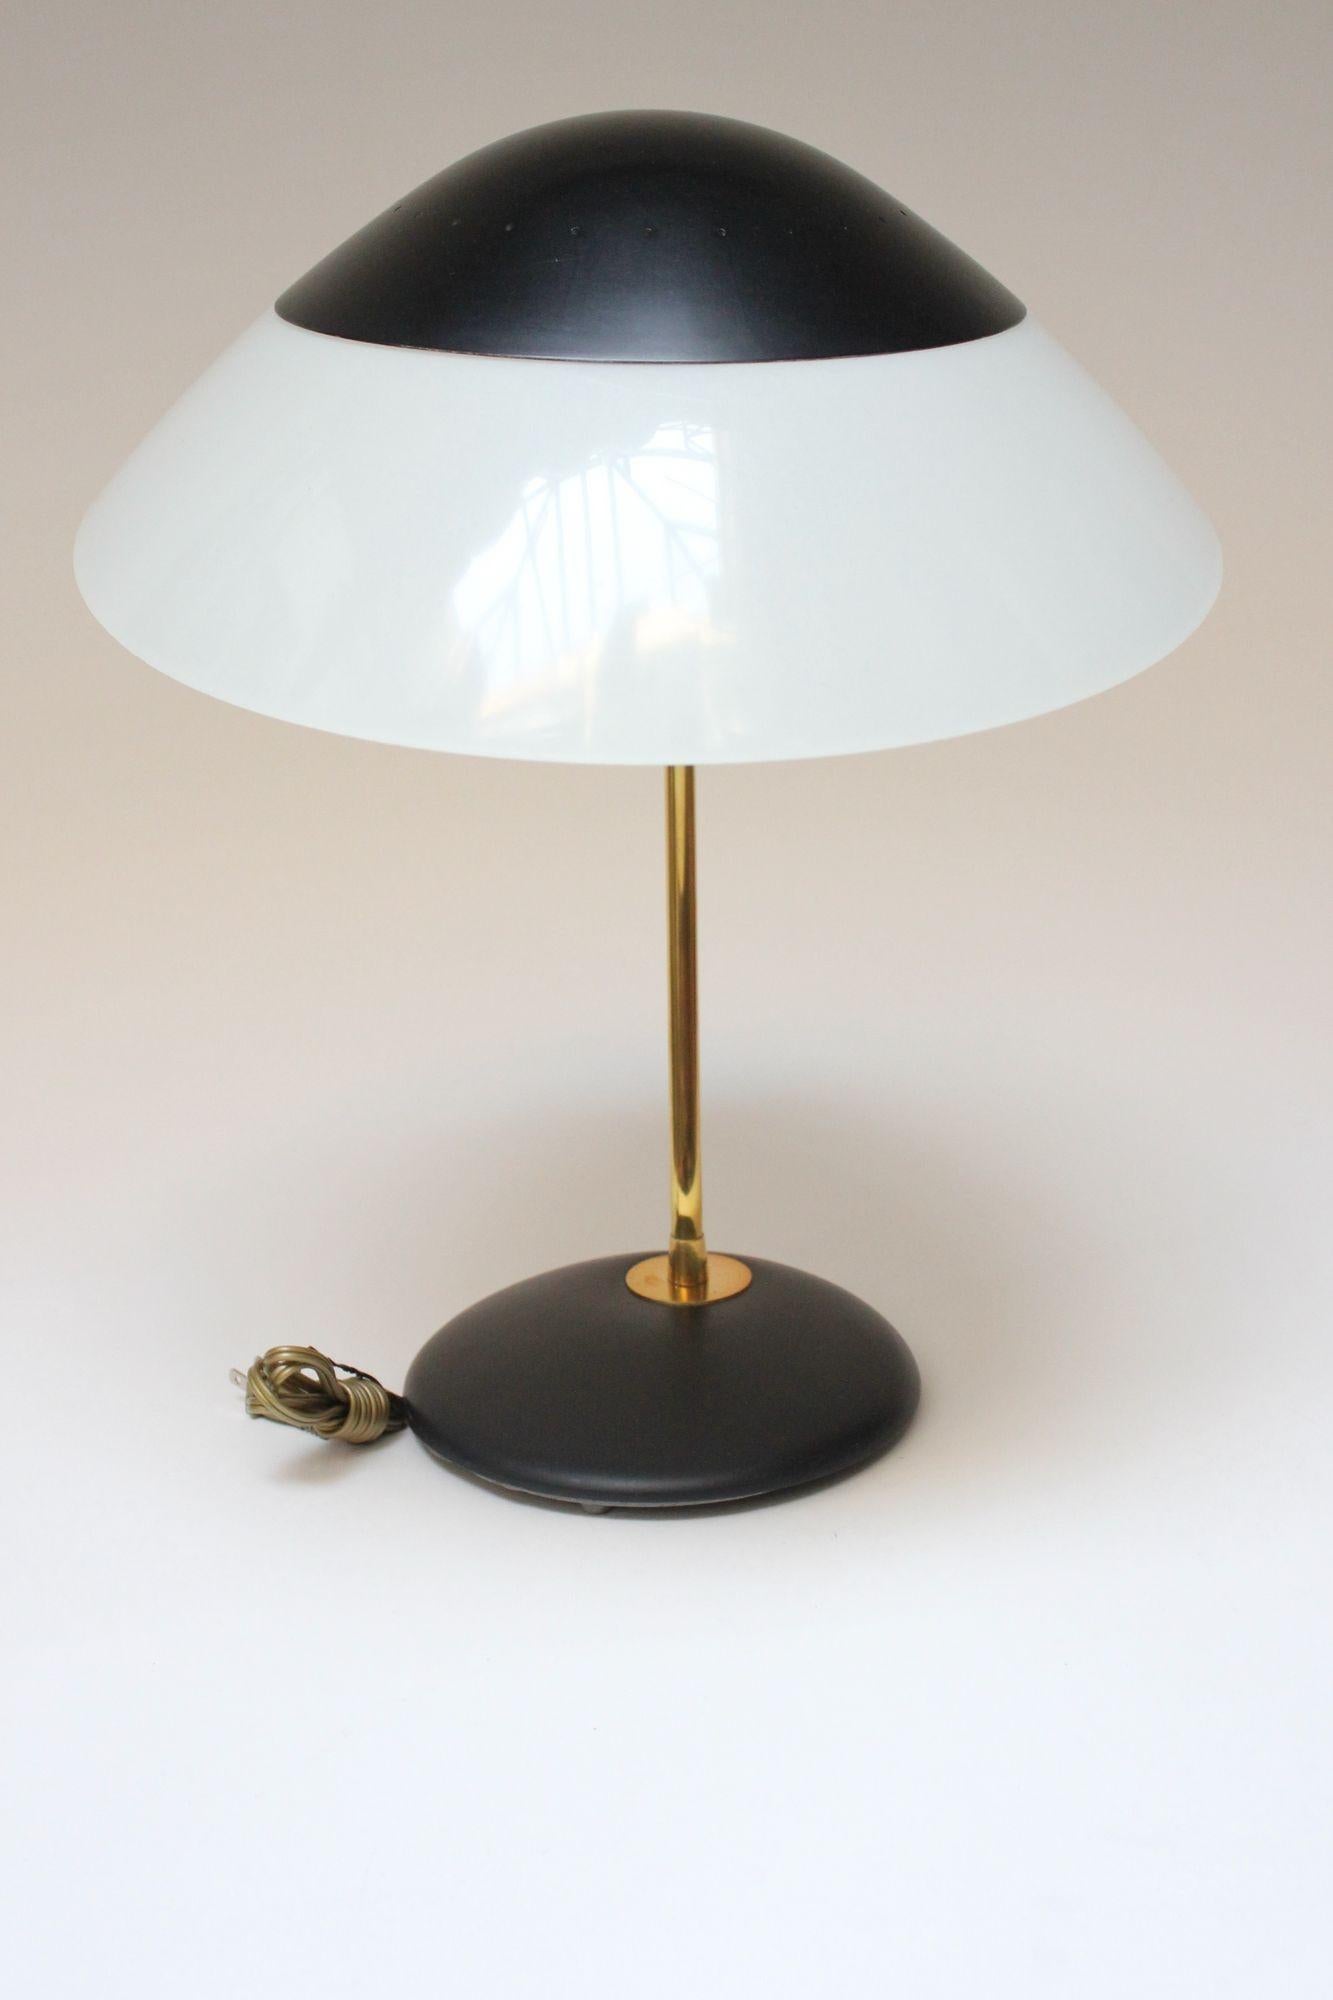 Lampe de table/de bureau de Gerald Thurston pour Lightolier avec un abat-jour surdimensionné et entièrement réglable (vers 1950, États-Unis). Hotte en métal émaillé noir et plexi avec tige/accents en laiton et diffuseur en plastique